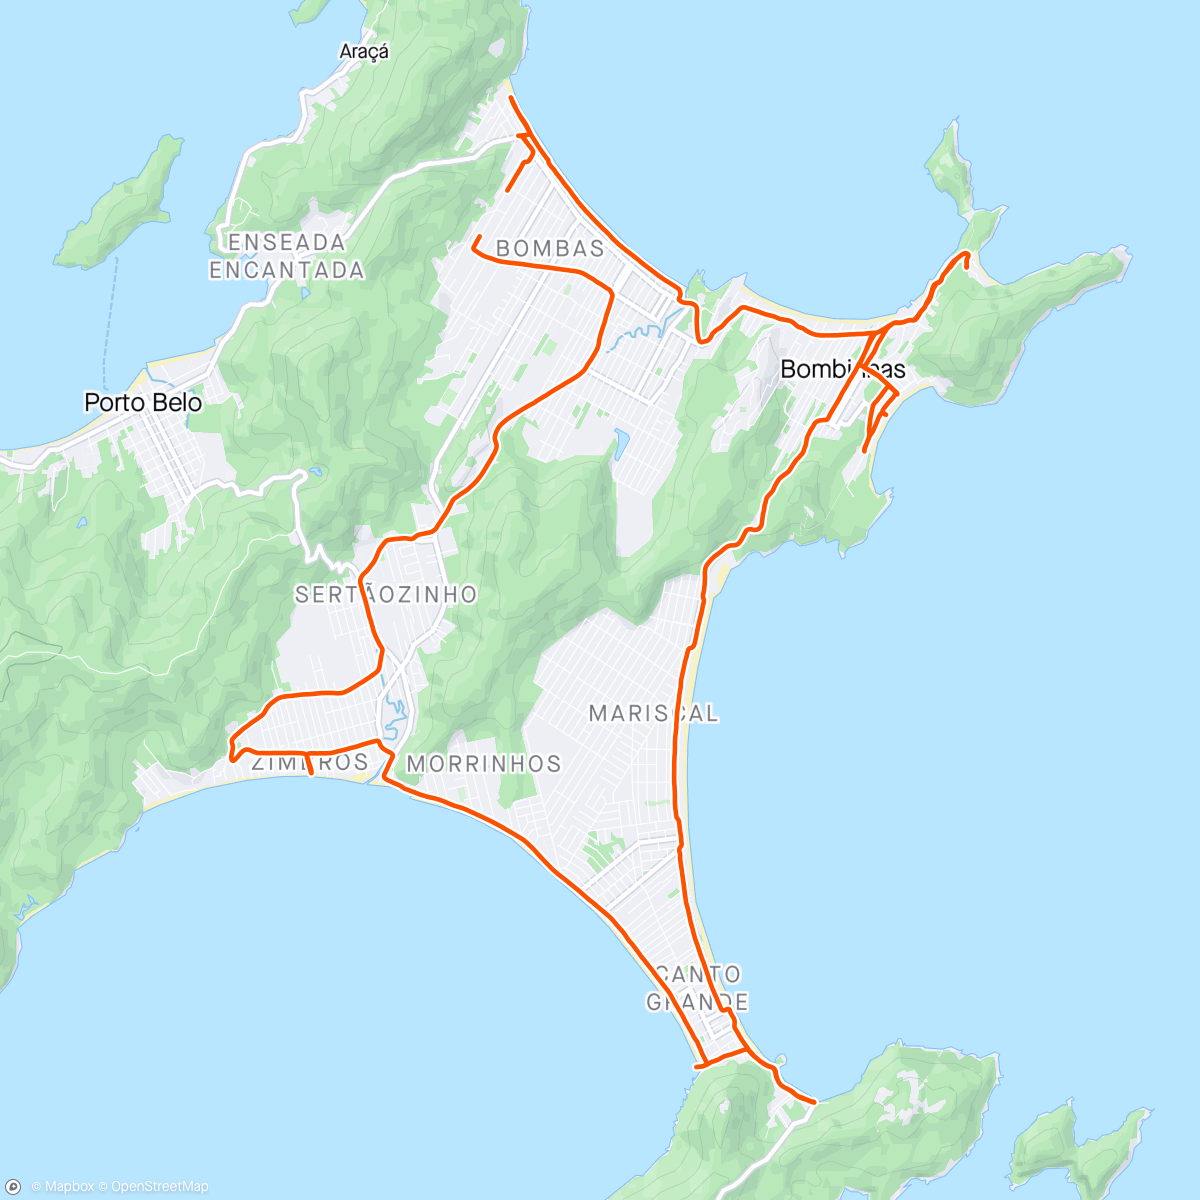 Map of the activity, Praias,Bombas,Bombinhas,Quatro Ilhas,Mariscal,Conceição, Canto Grande,Morrinhos,zimbros 🚴🏽‍♀️💖